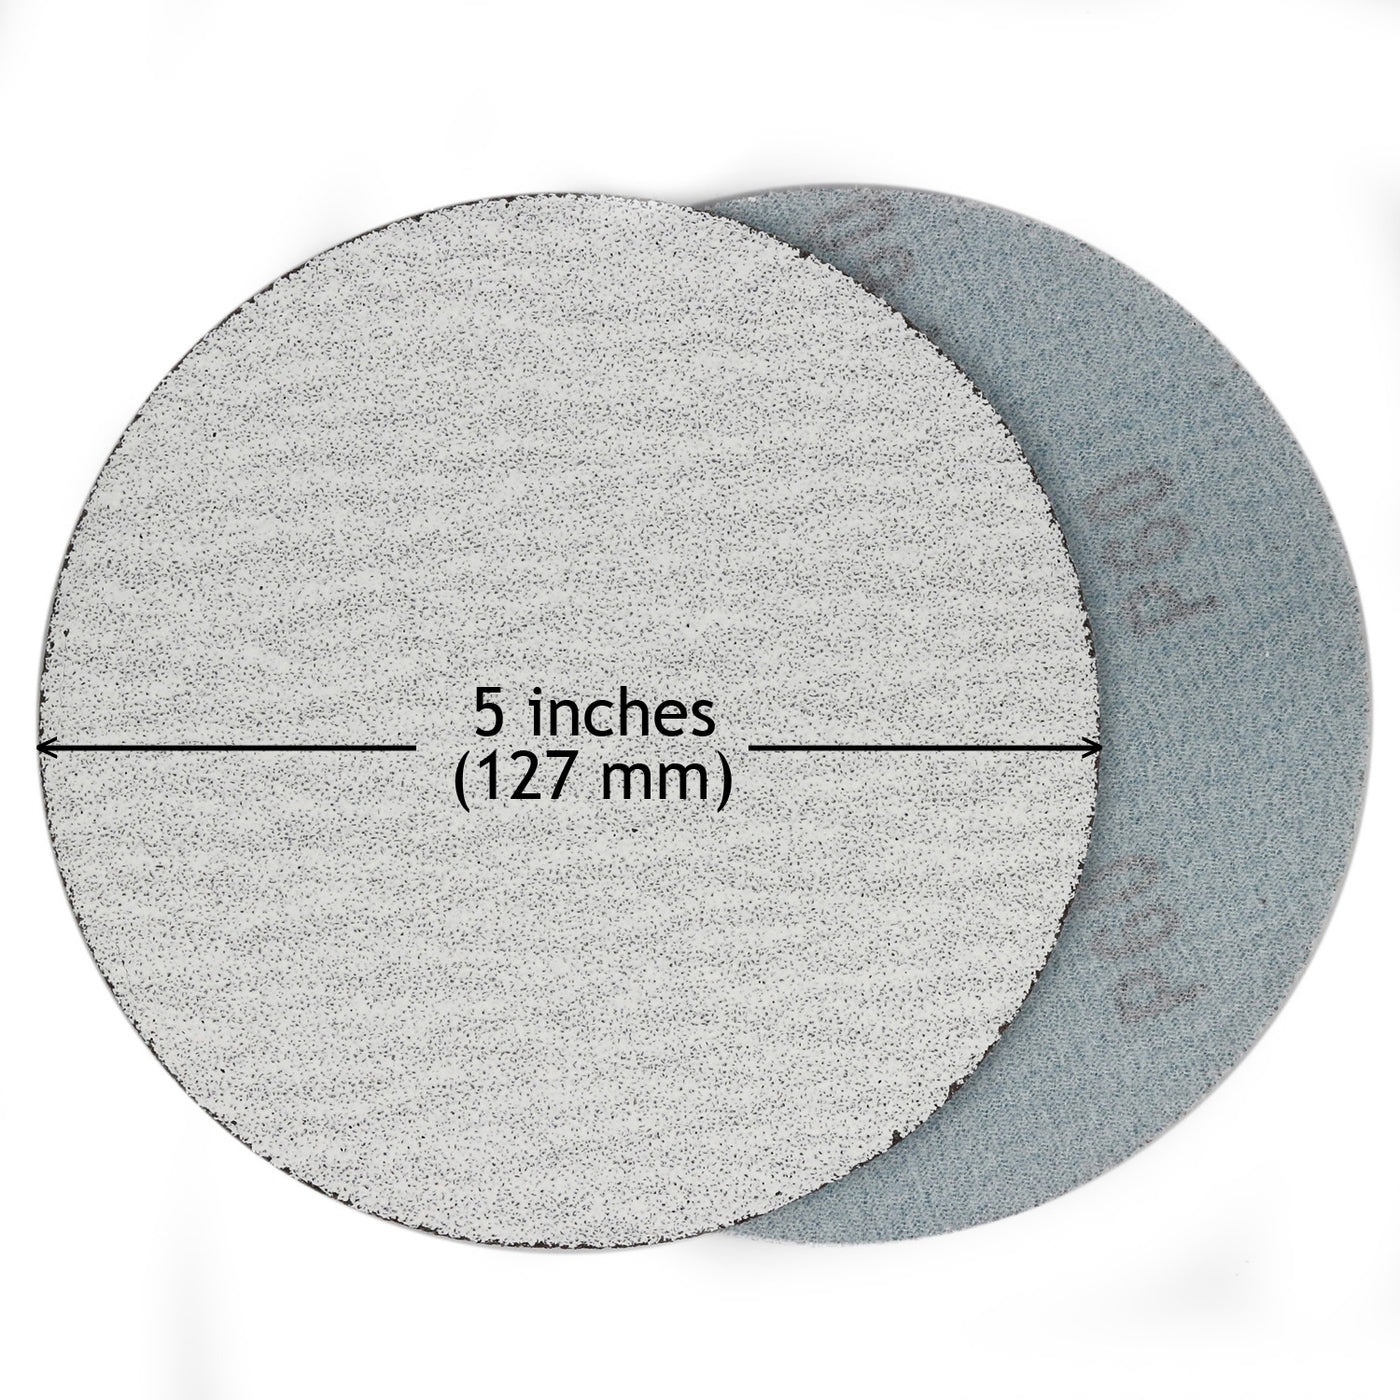 5 Inch Sanding Discs